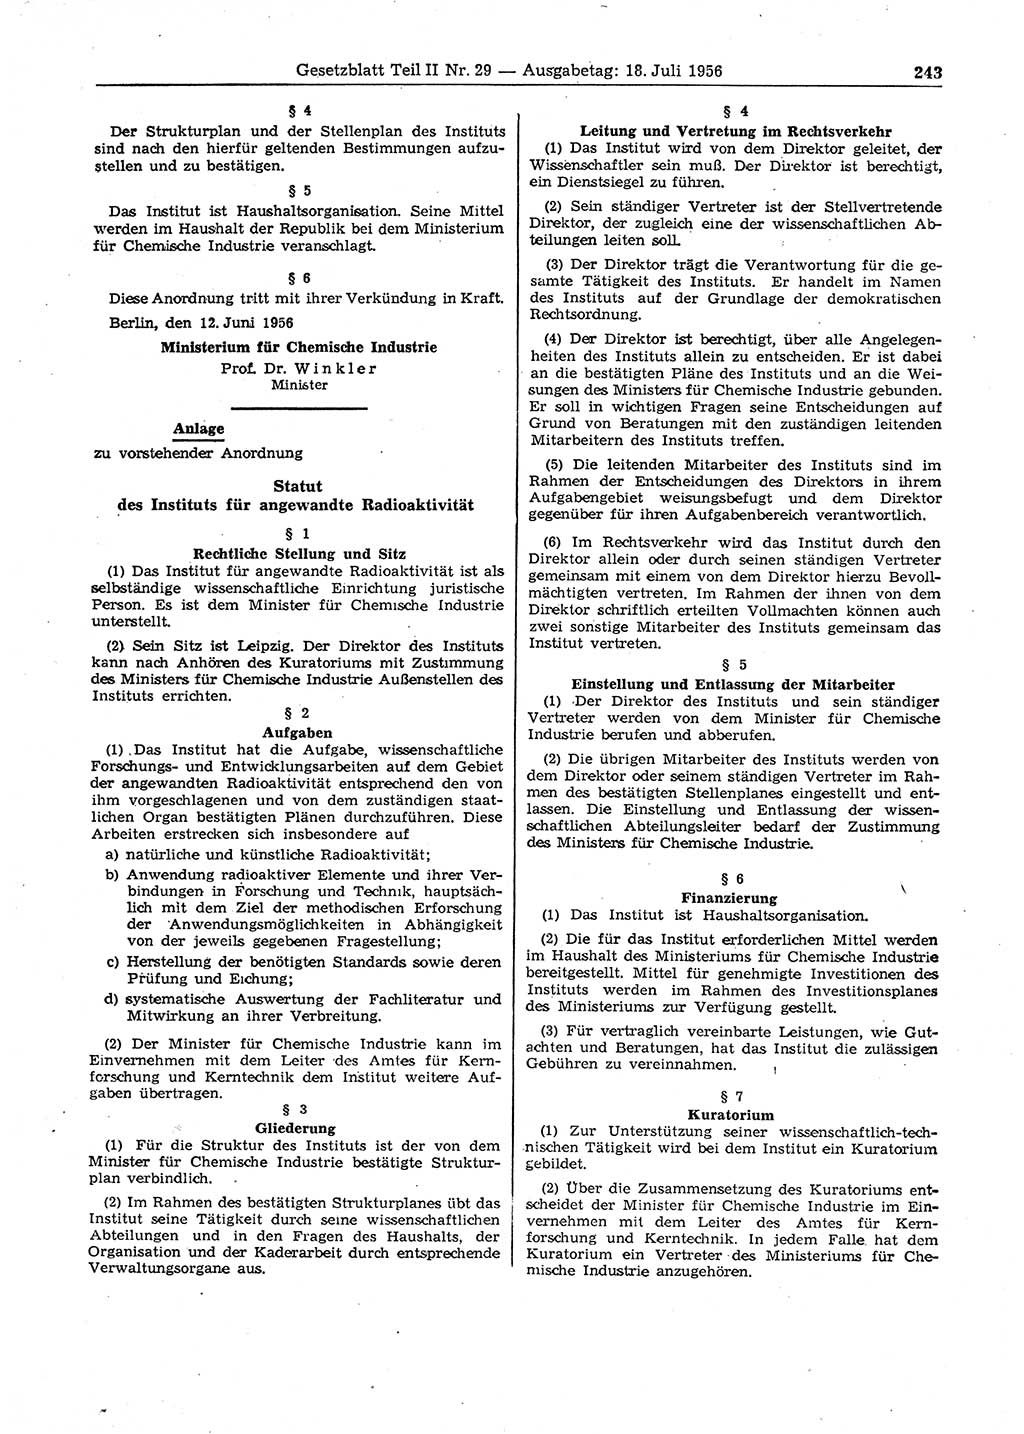 Gesetzblatt (GBl.) der Deutschen Demokratischen Republik (DDR) Teil ⅠⅠ 1956, Seite 243 (GBl. DDR ⅠⅠ 1956, S. 243)